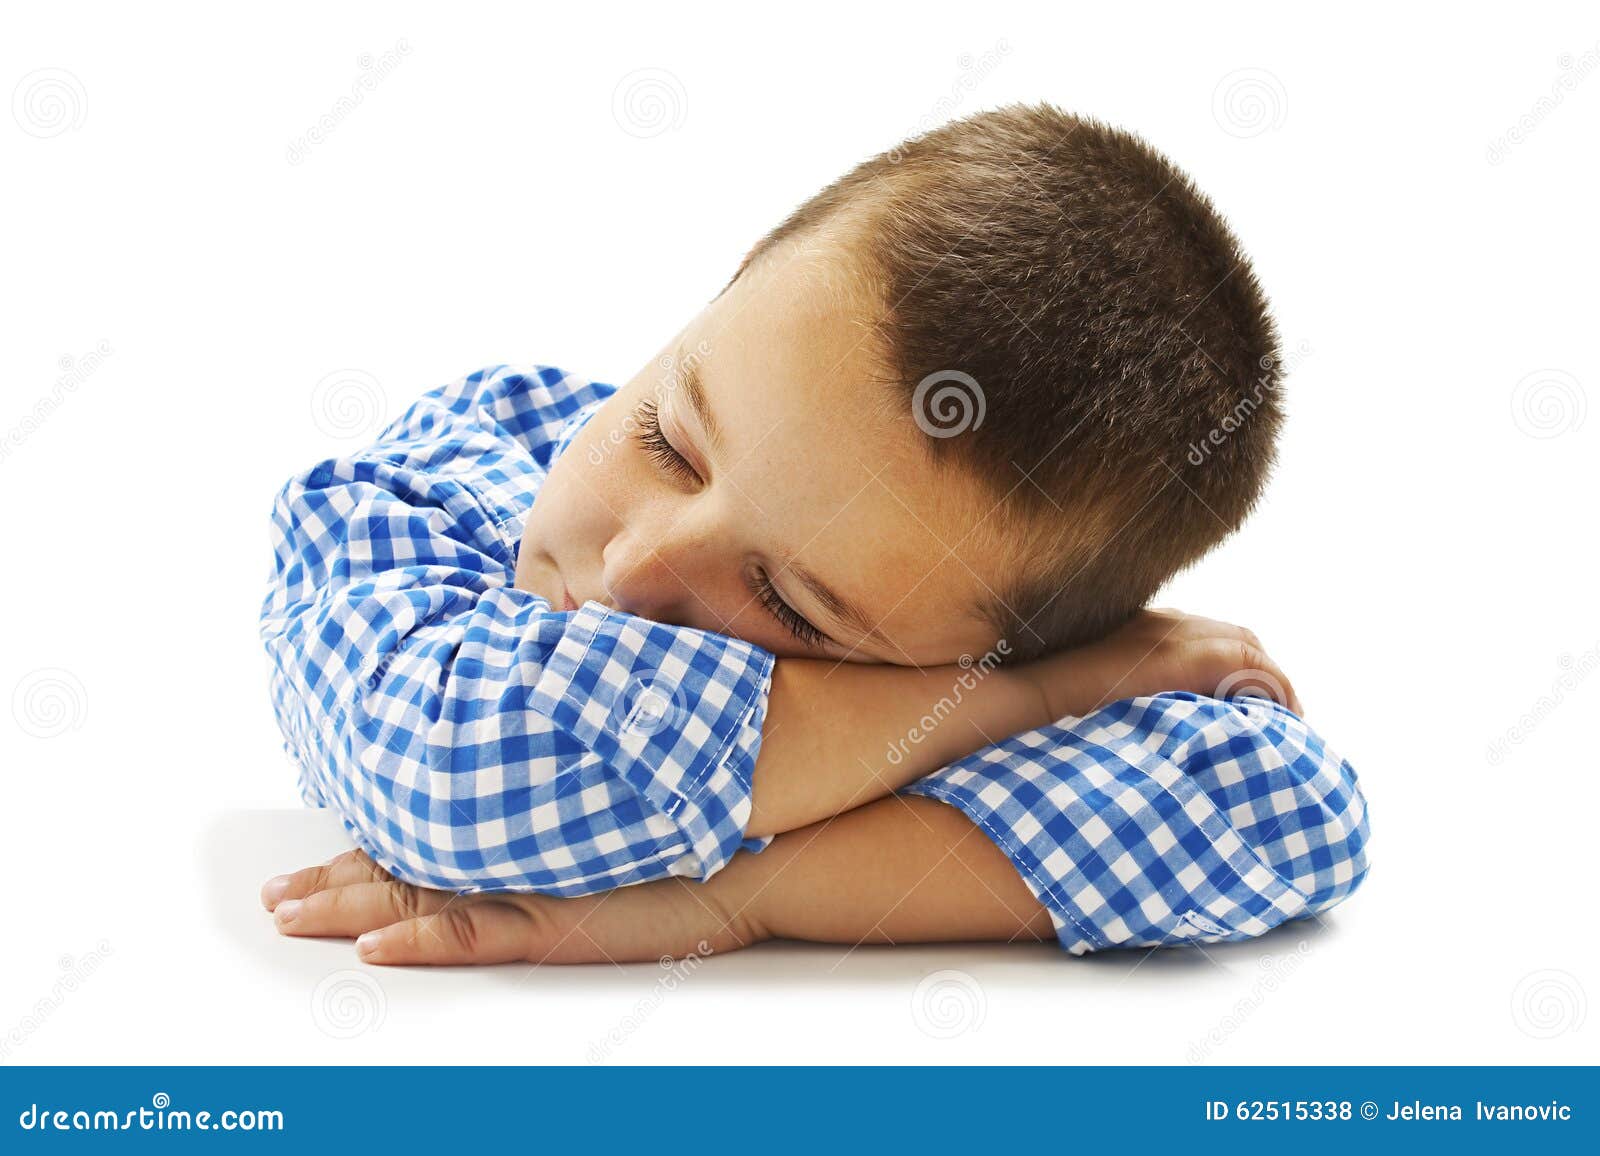 School Boy Sleeping On Desk Stock Photo Image Of Looking